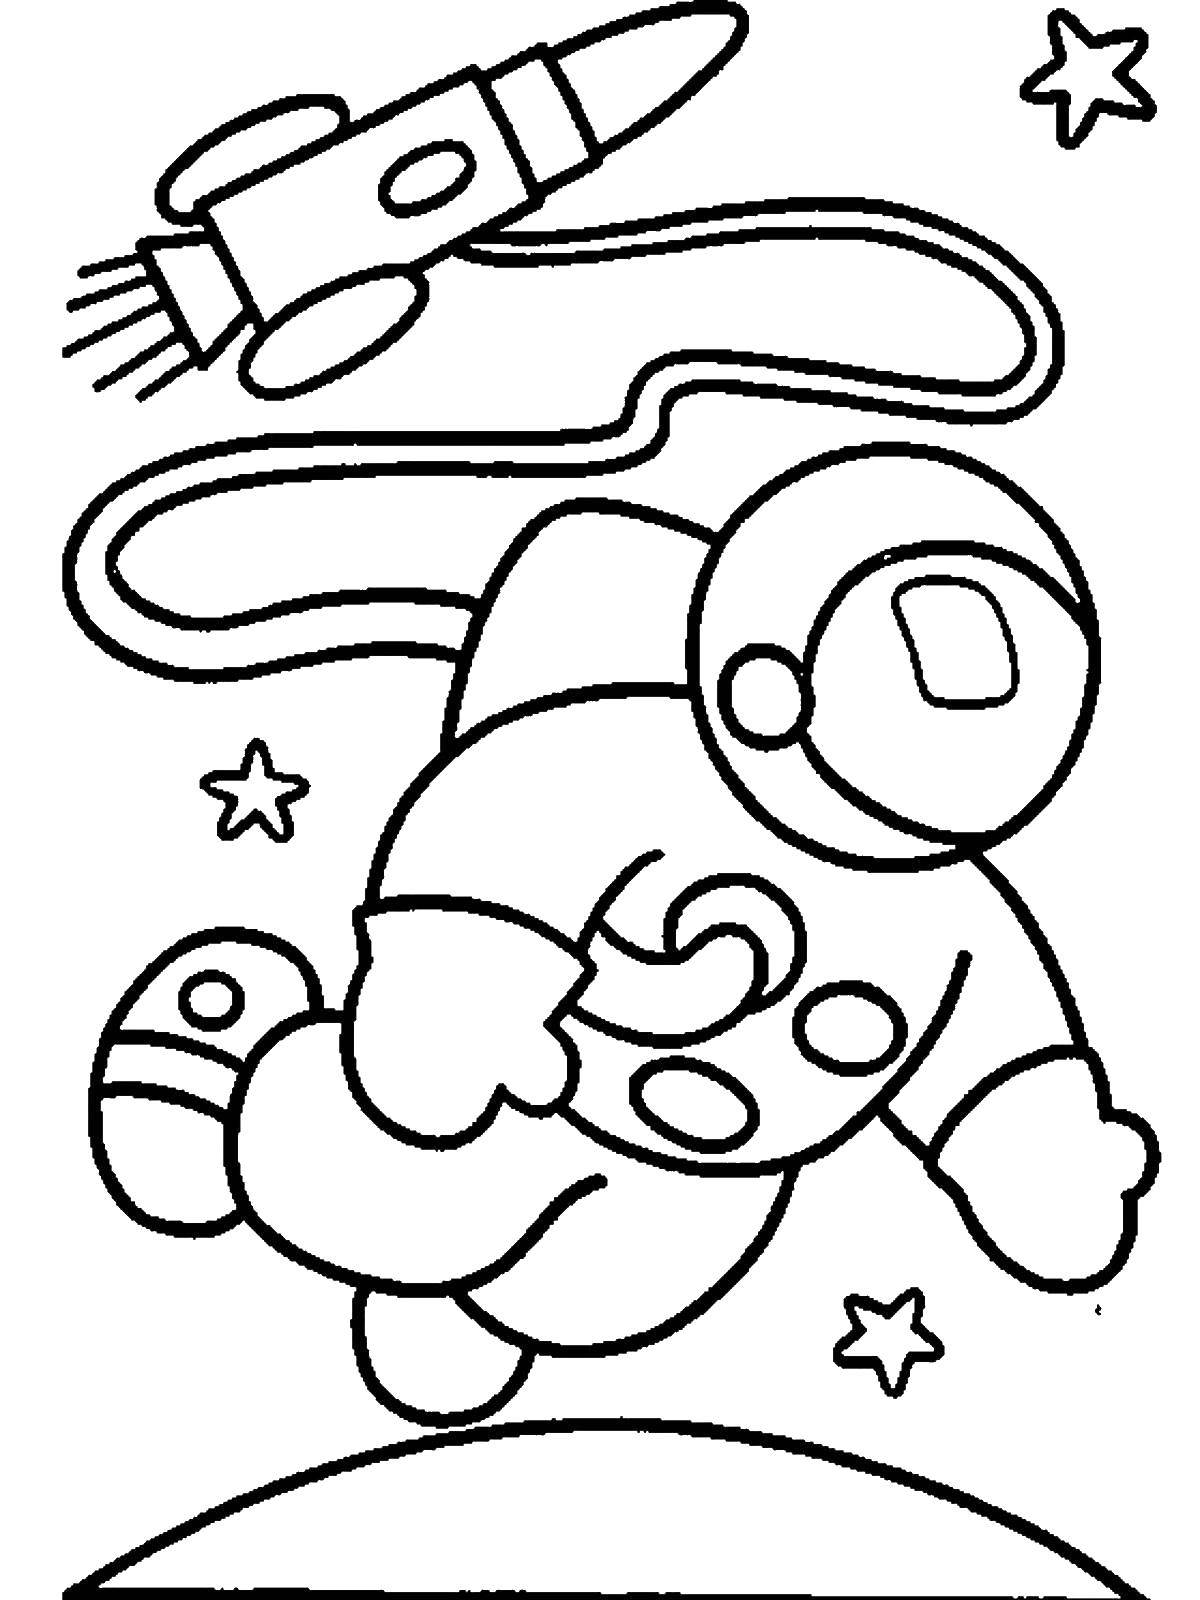 Картинки ко дню космонавтики для детского сада. Космос раскраска для детей. Раскраска. В космосе. Космонавт раскраска для детей. Раскраска на тему космос для детей.